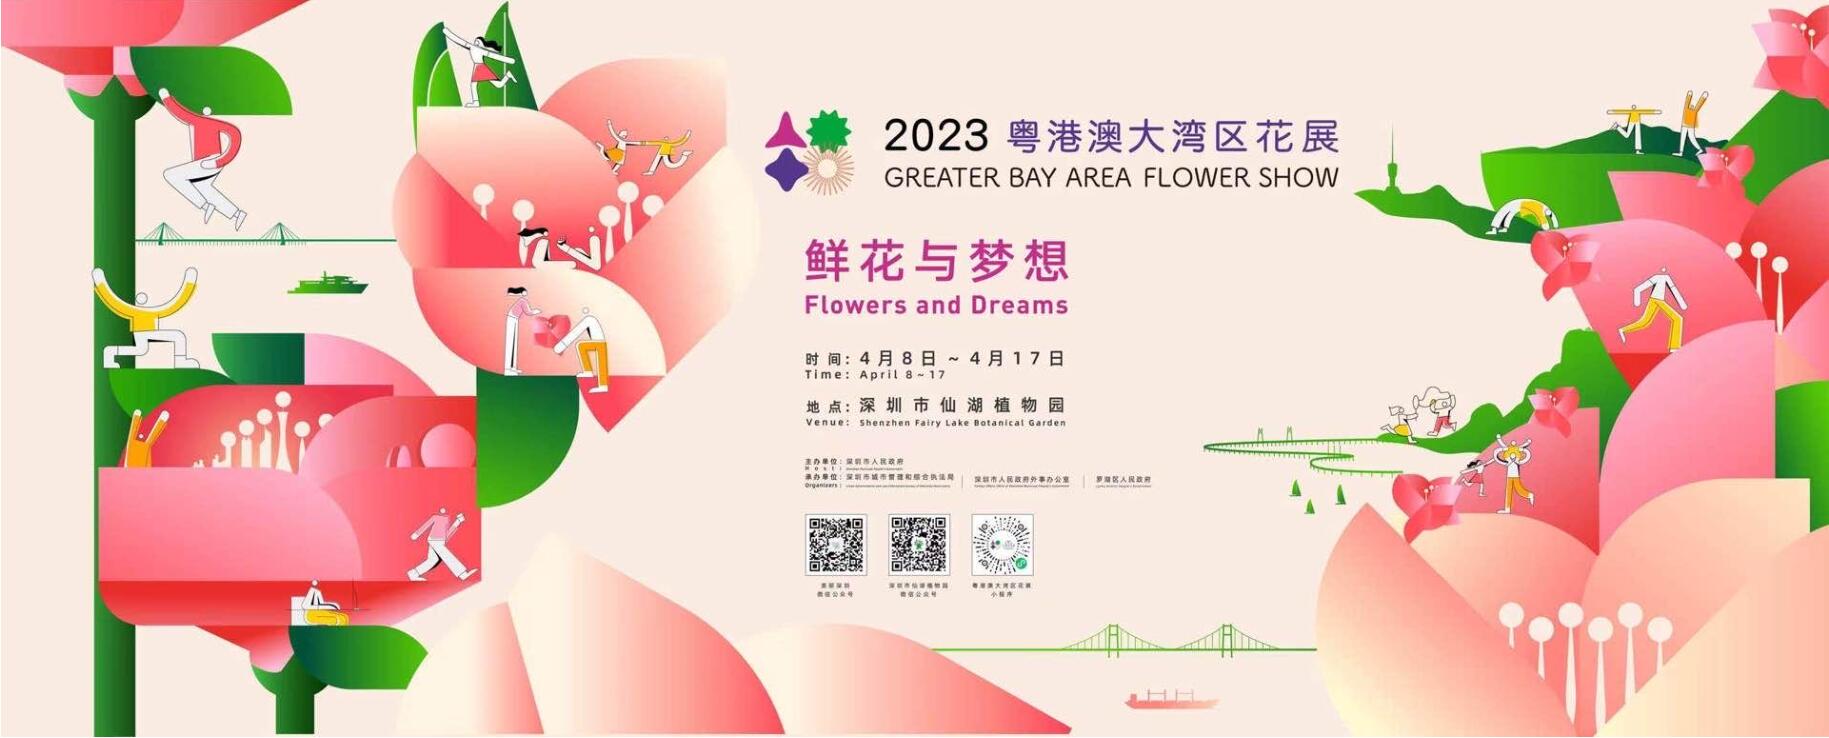 2023粵港澳大灣區花展將於4月在深圳開幕